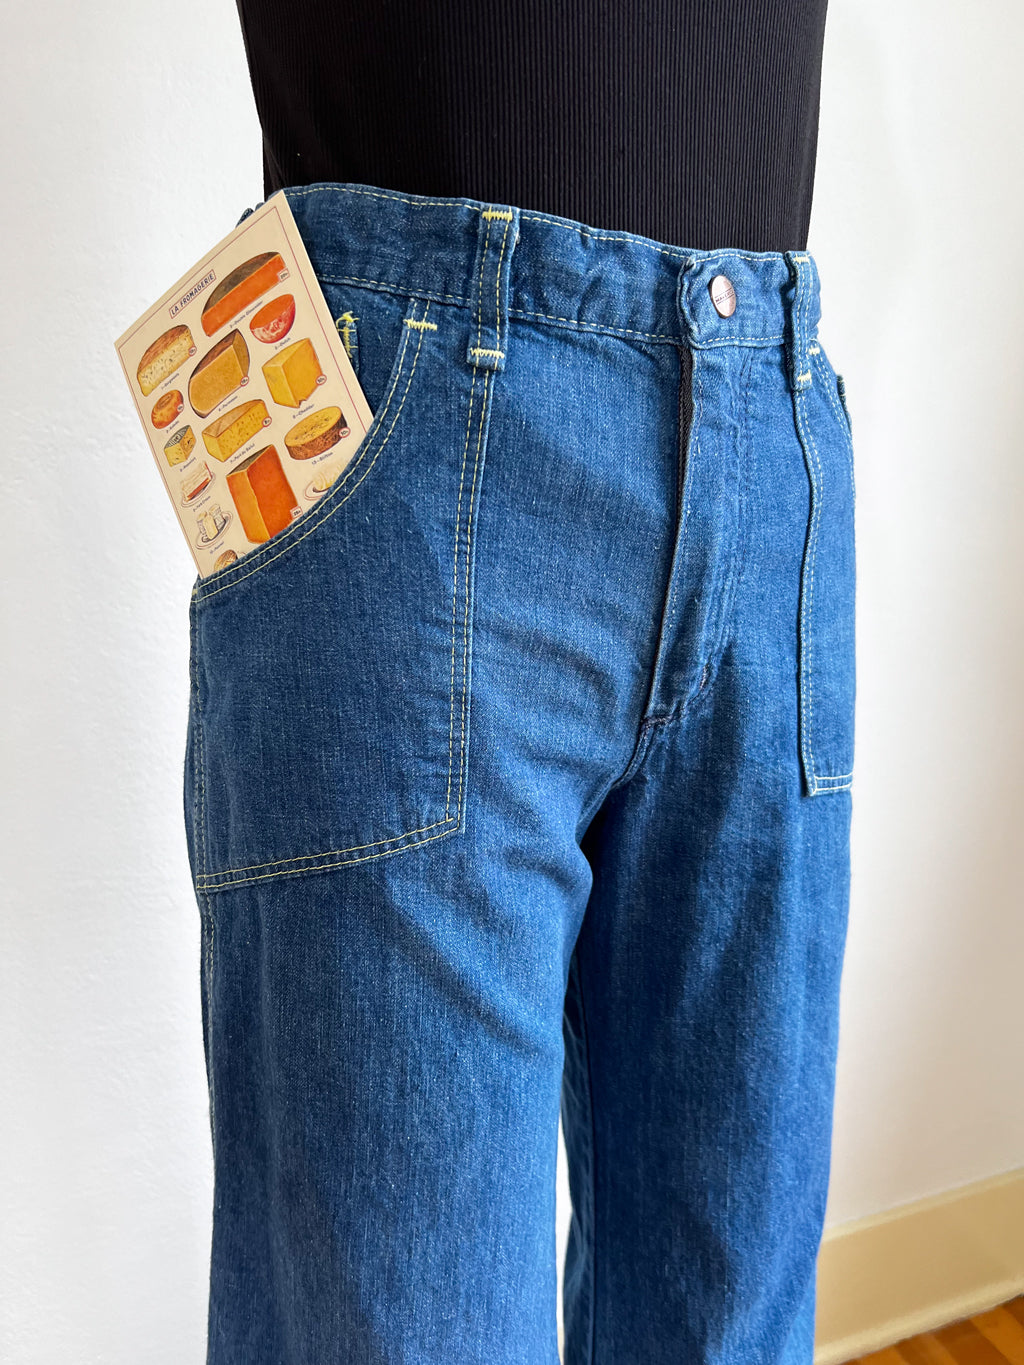 Vintage 1970s Medium Wash Denim Flares Jeans - MAVERICK Patchwork Grid Motif Bell Bottoms W26"